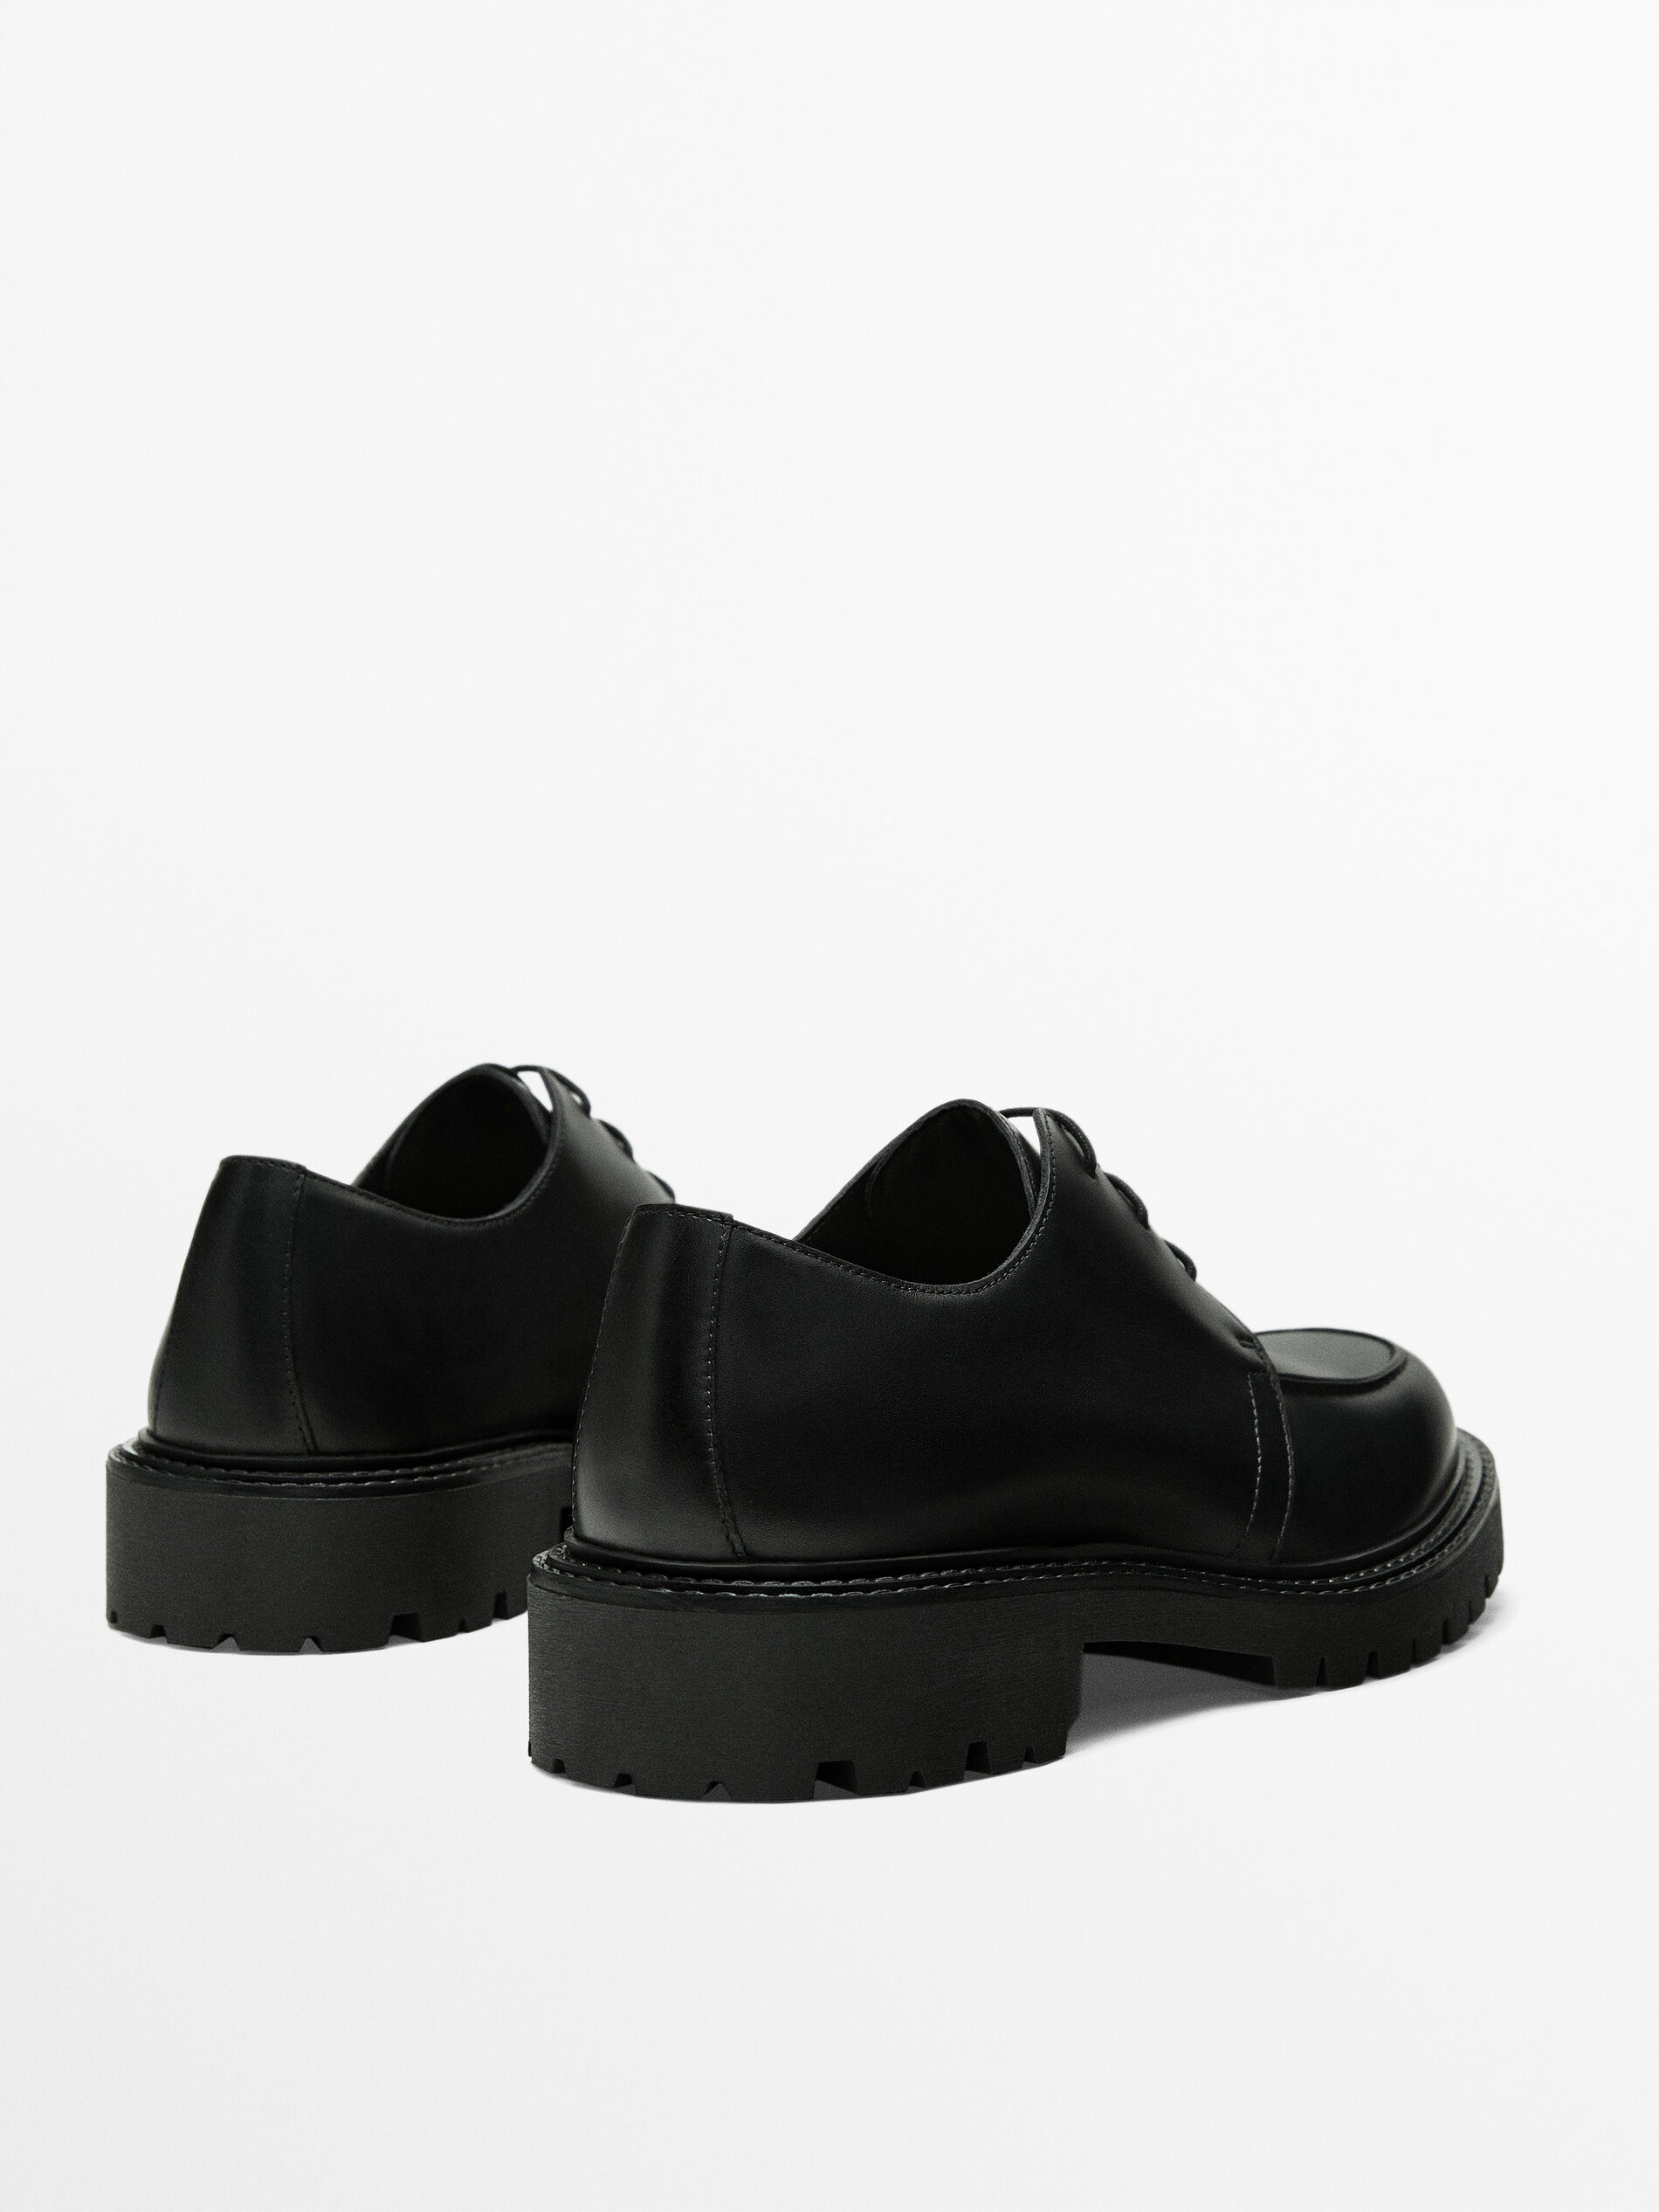 Zapato bordón negro